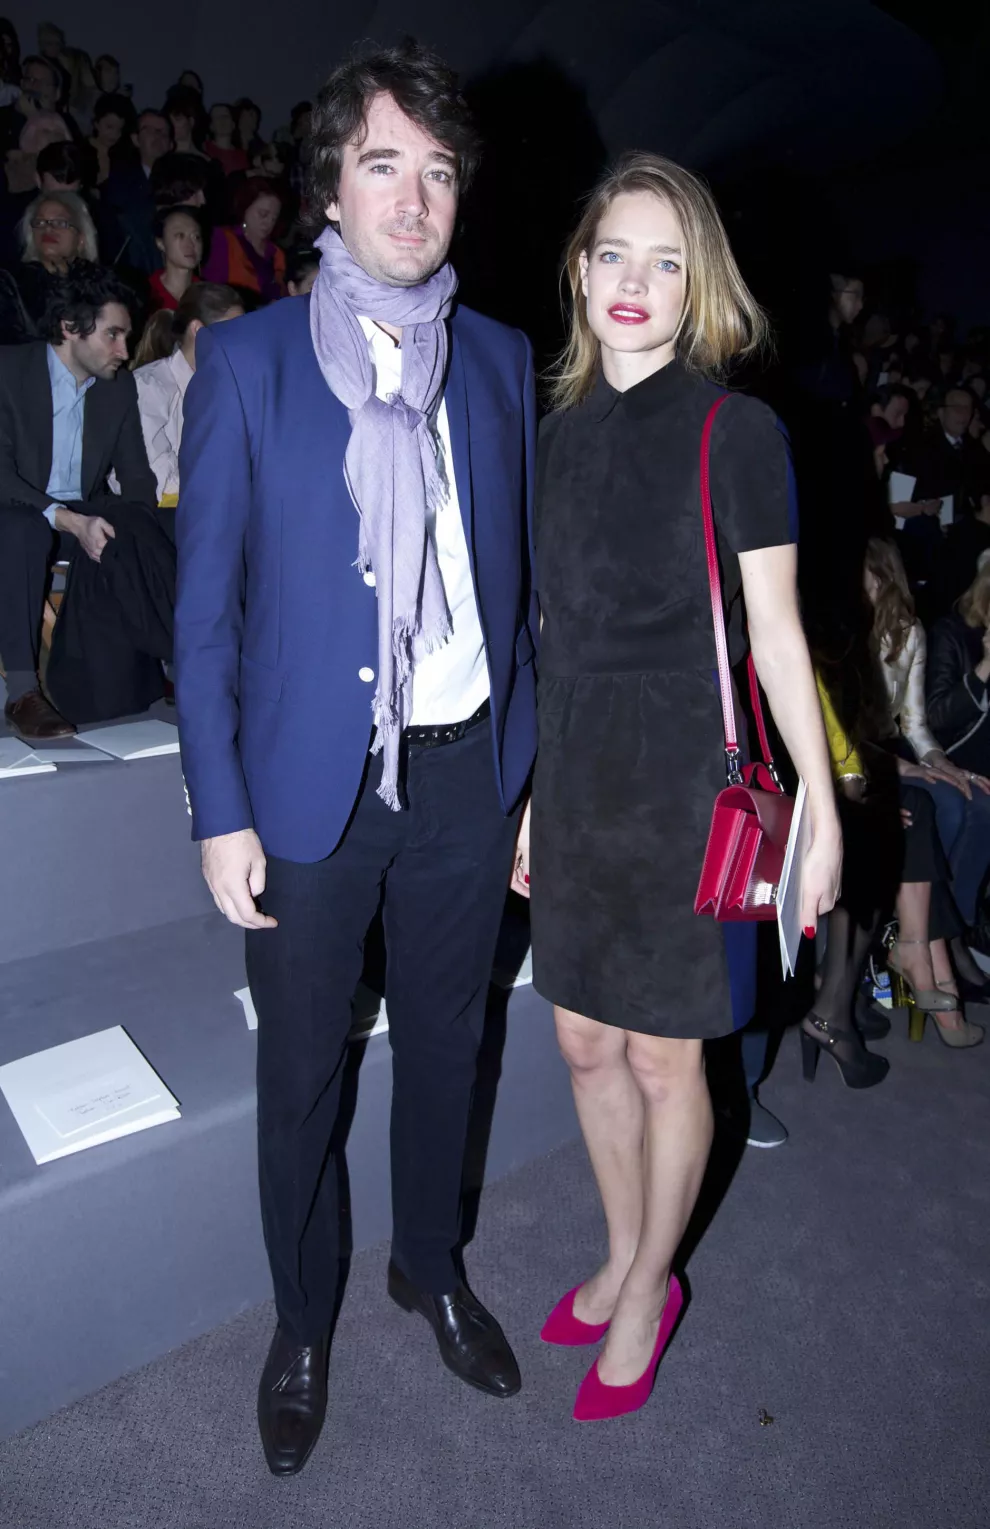 Una pareja muy top: Natalia Vodianova, la modelo rusa, y Antoine Arnault, el heredero del imperio LVMH. ¿Quién de los dos crees que tiene más sentido de la moda?